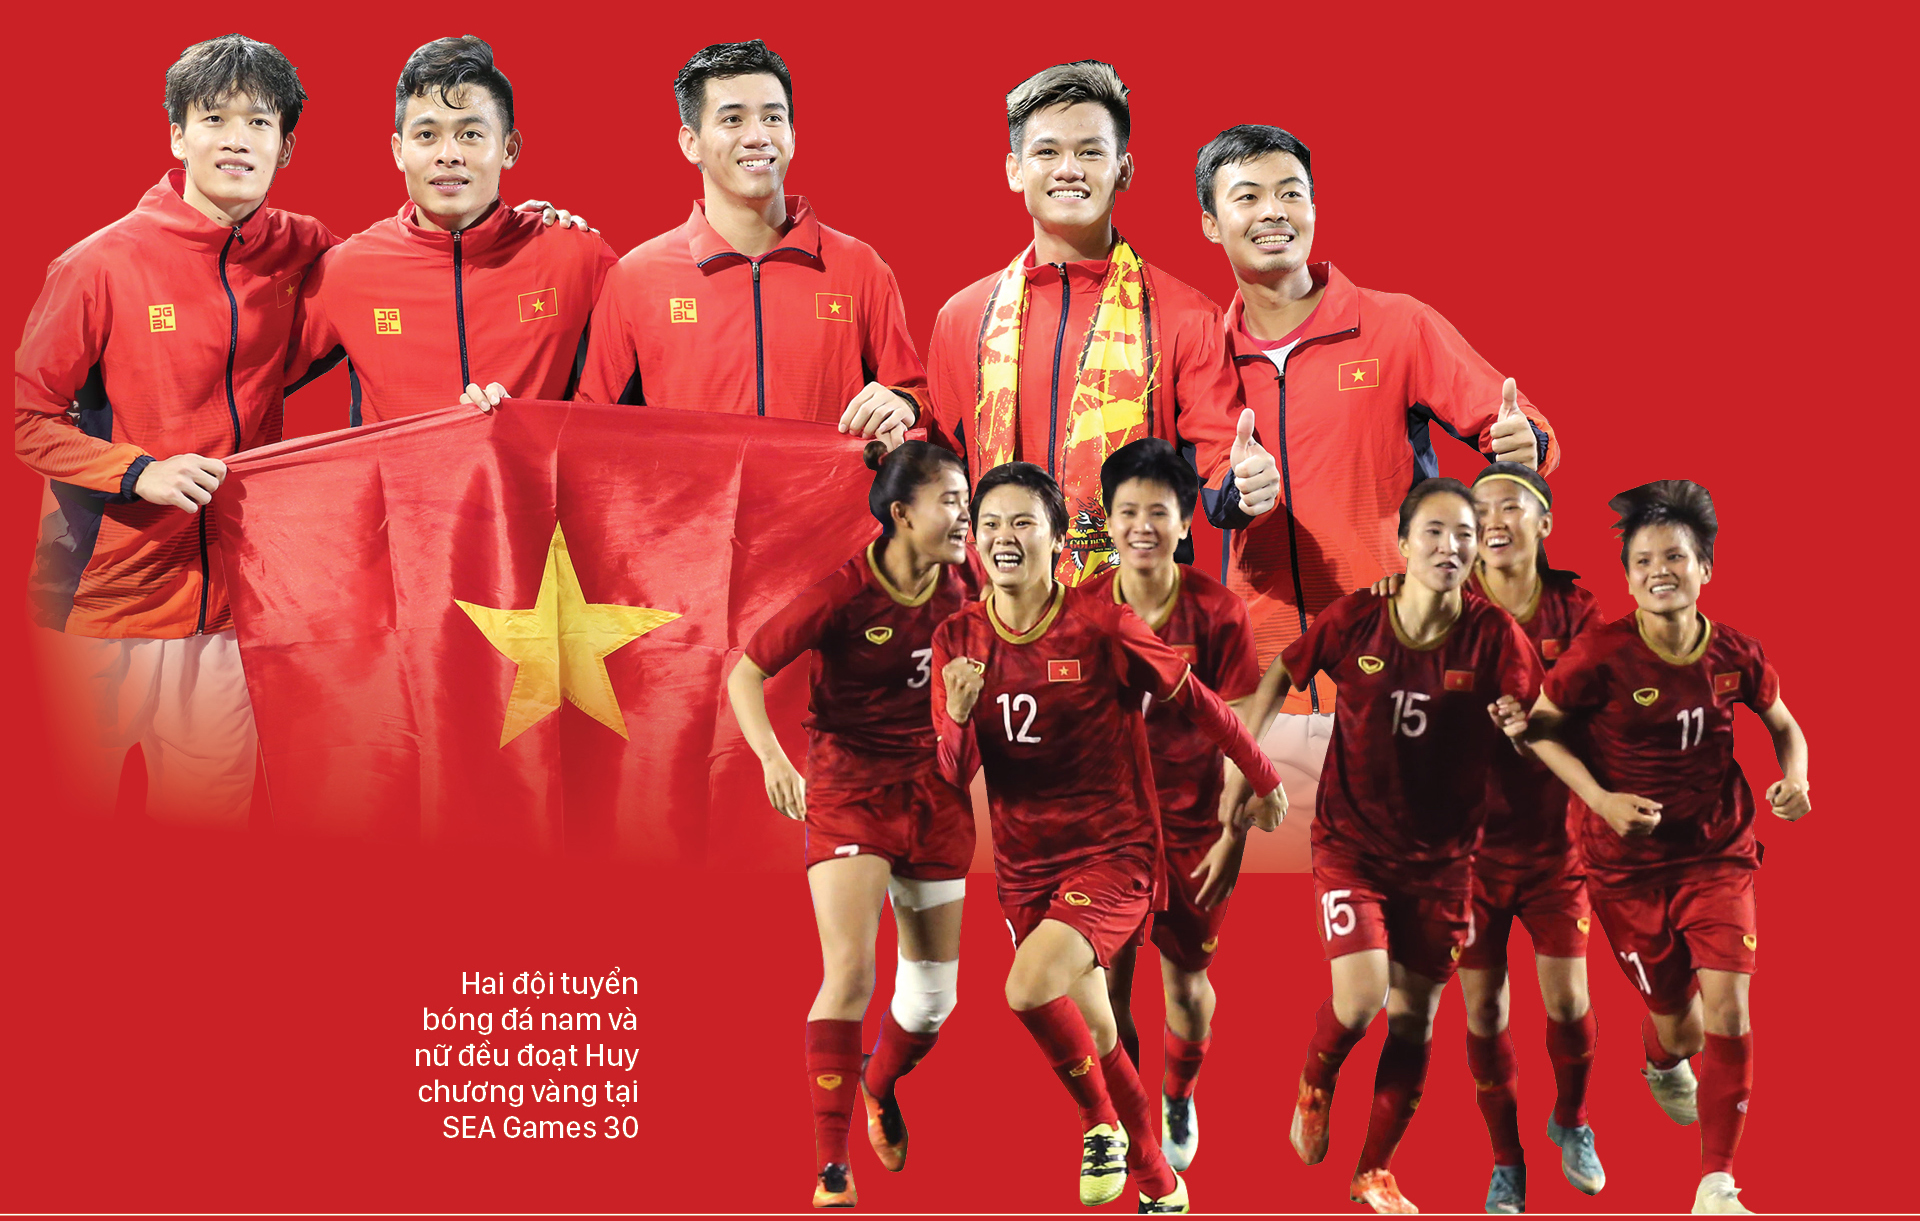 Thể thao Việt Nam - Kiêu hãnh đi về tương lai ảnh 3